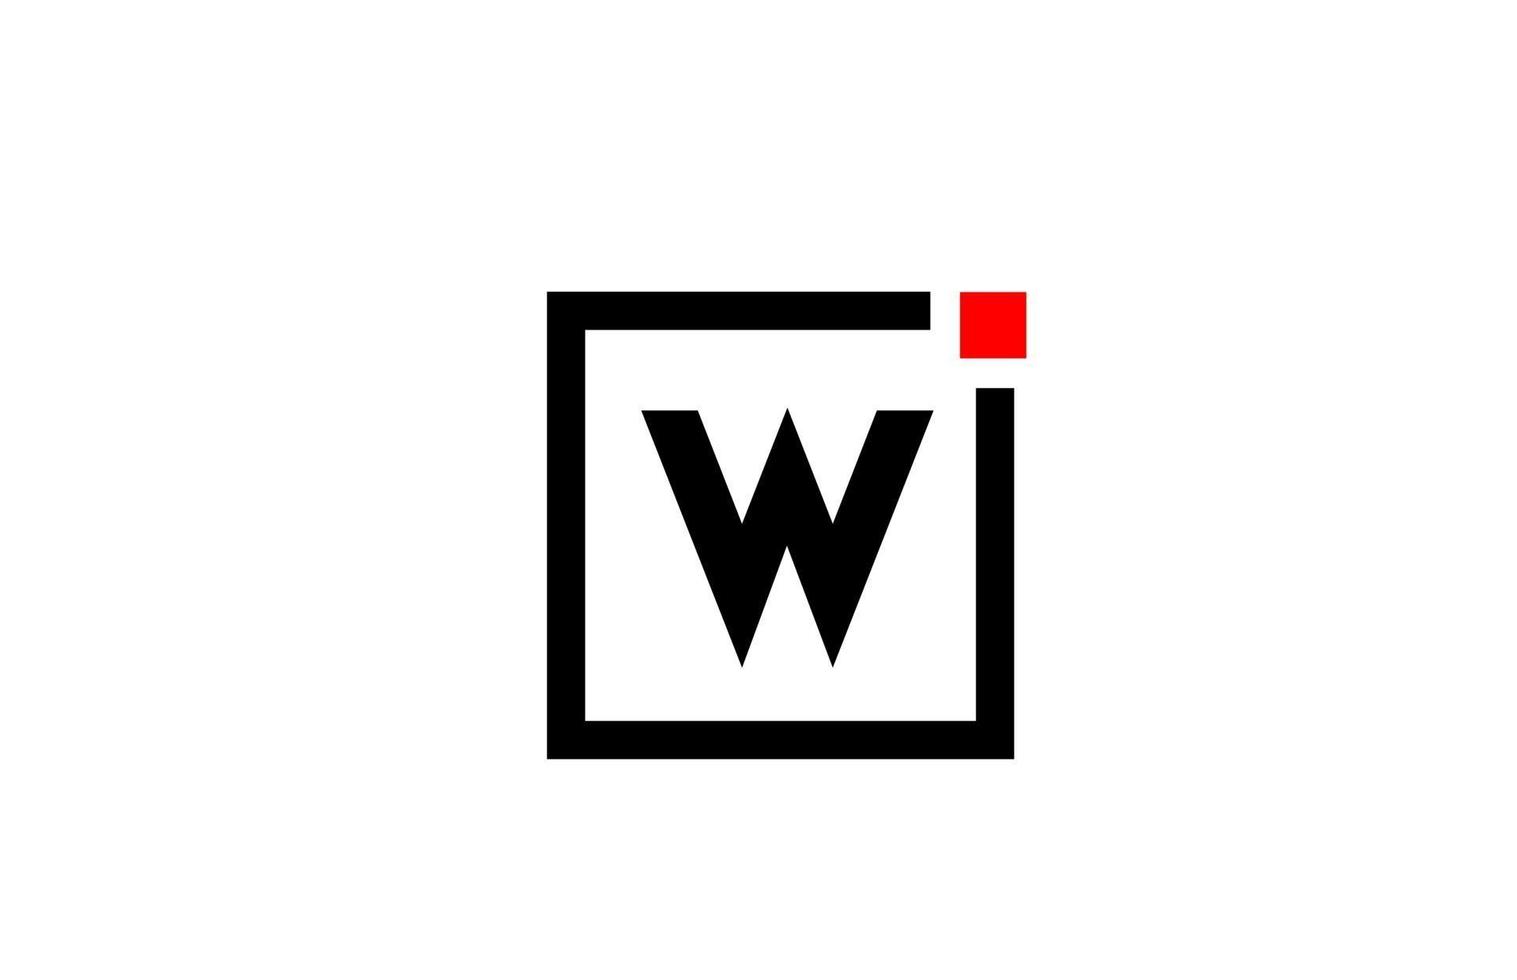 w alfabet letterpictogram logo in zwart-wit. bedrijfs- en zakelijk ontwerp met vierkante en rode stip. creatieve huisstijlsjabloon vector